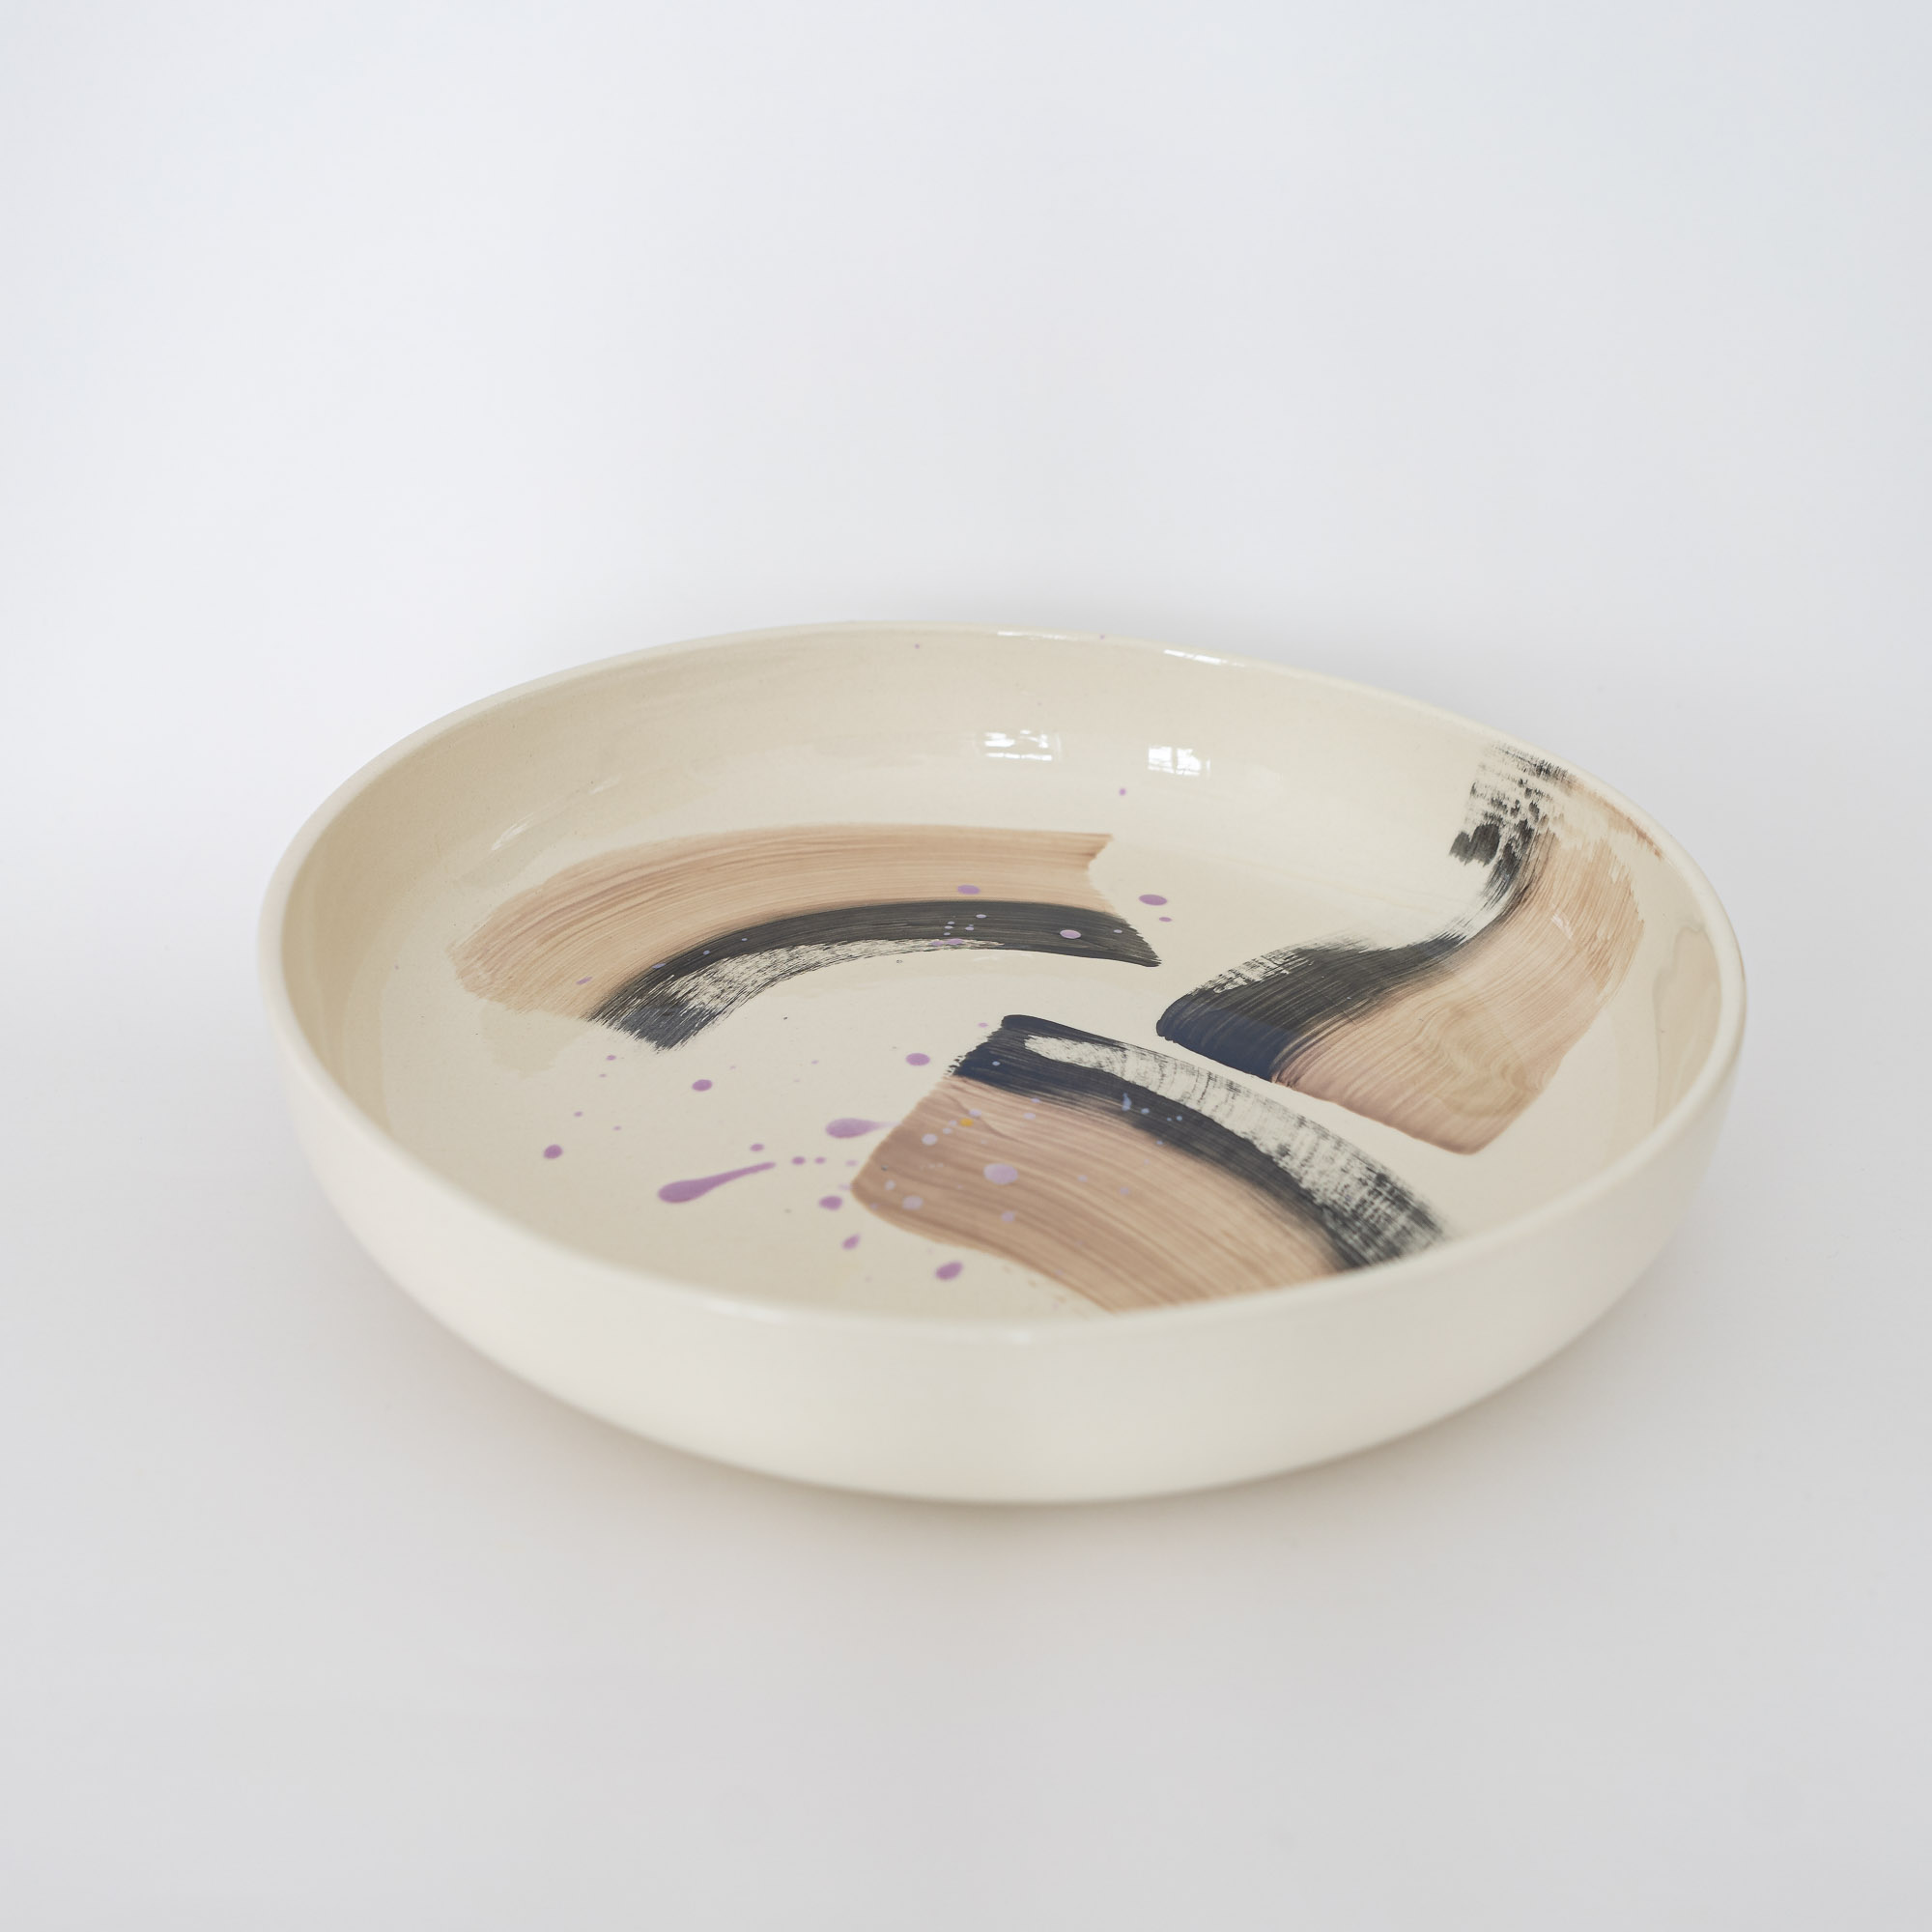 nicenicenice keramik00028